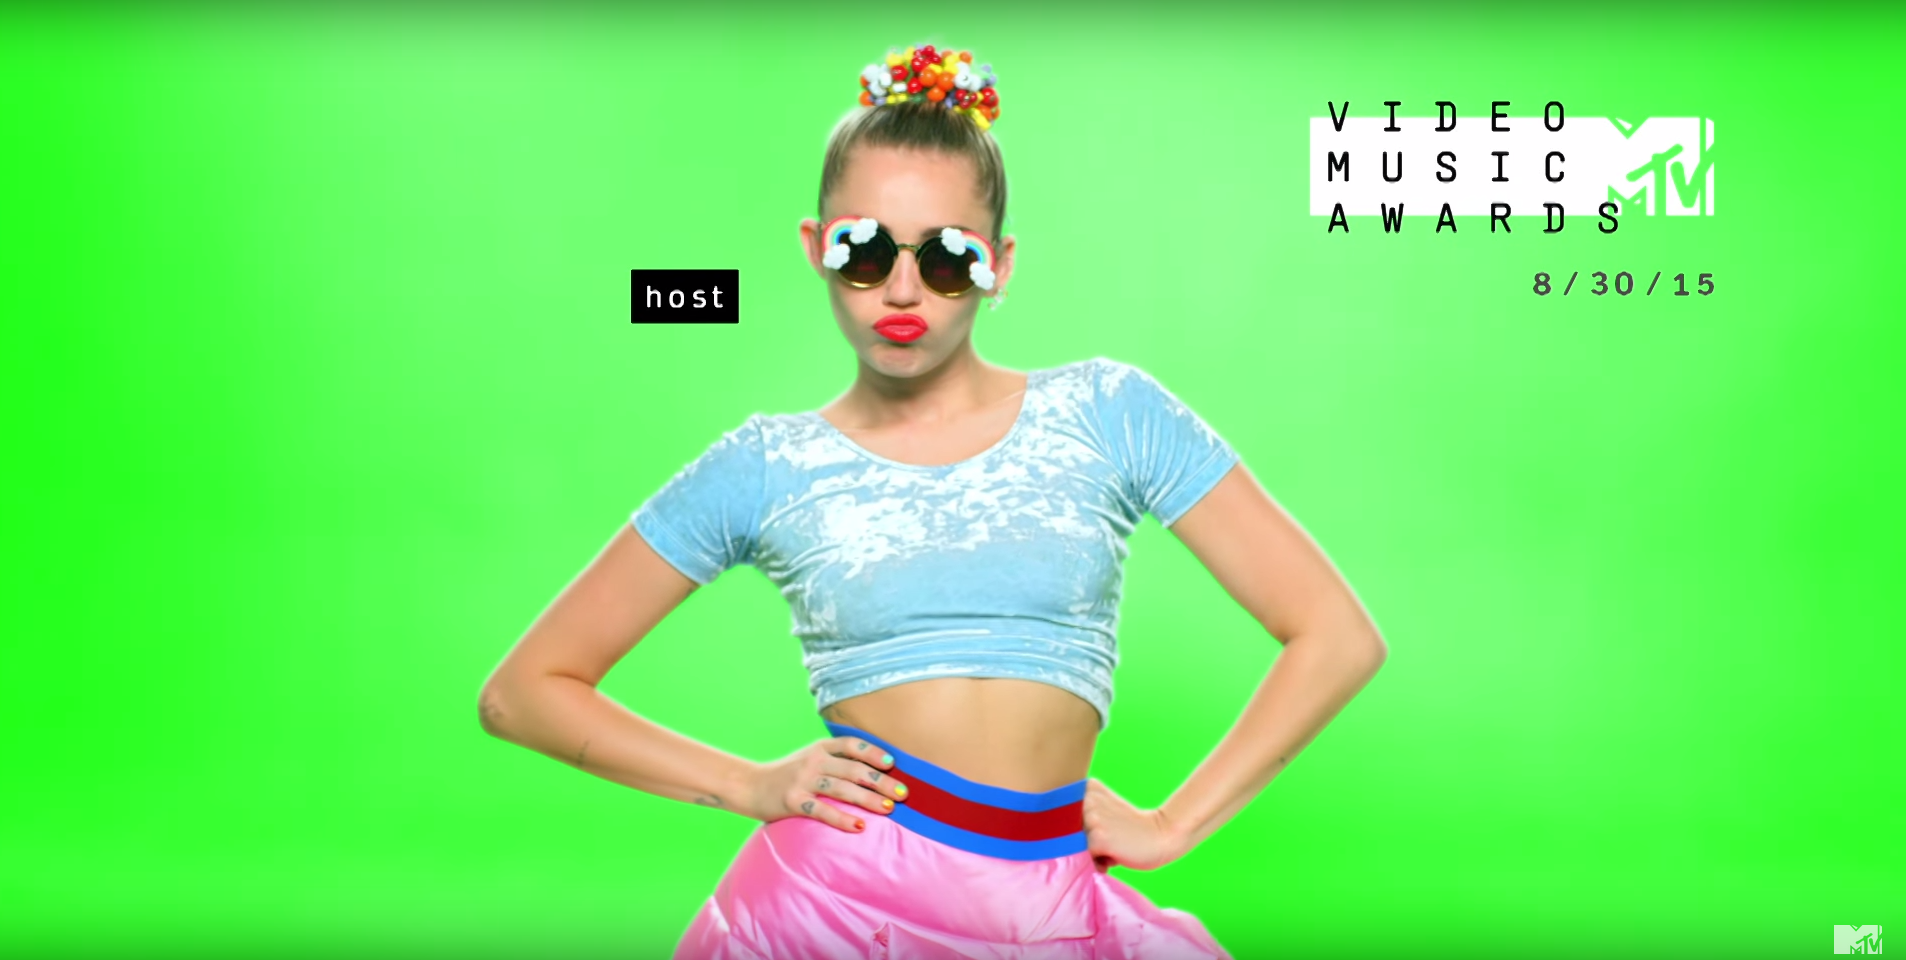 Miley Cyrus, host the 2015 VMAs.